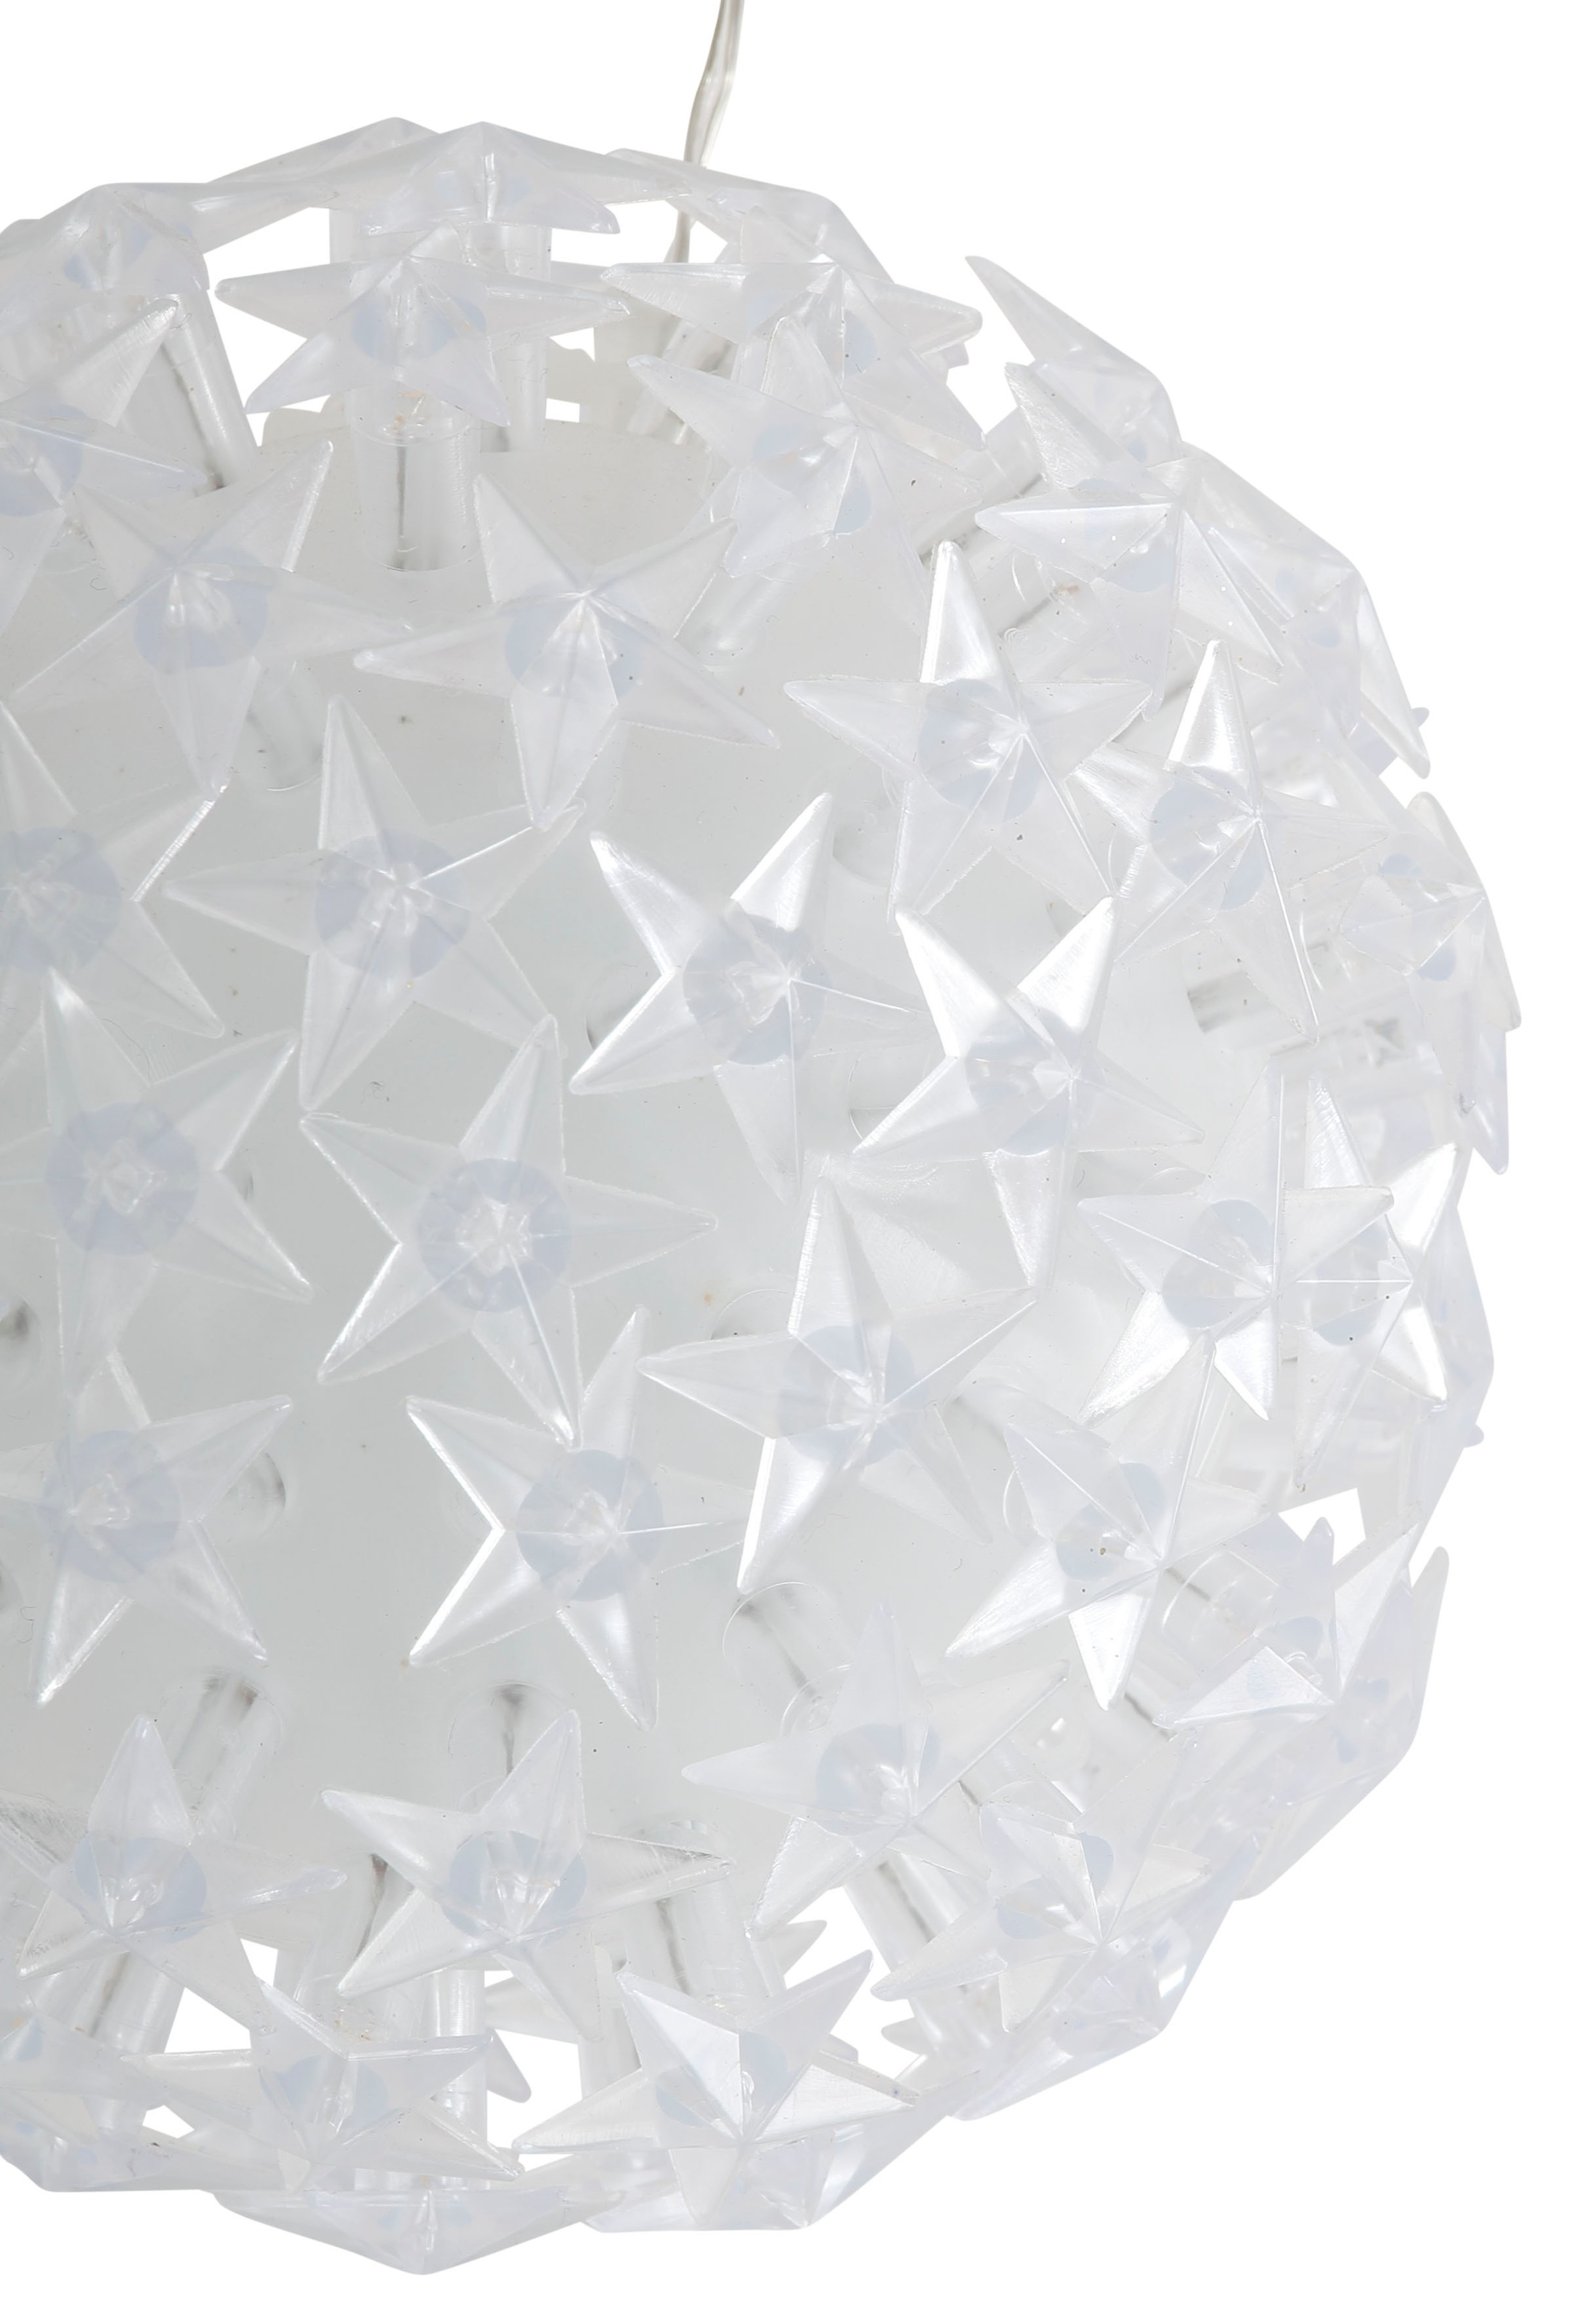 AM online Dekolicht, LED Weihnachtsdeko Sternen, OTTO Kugel mit bei Design LED aussen